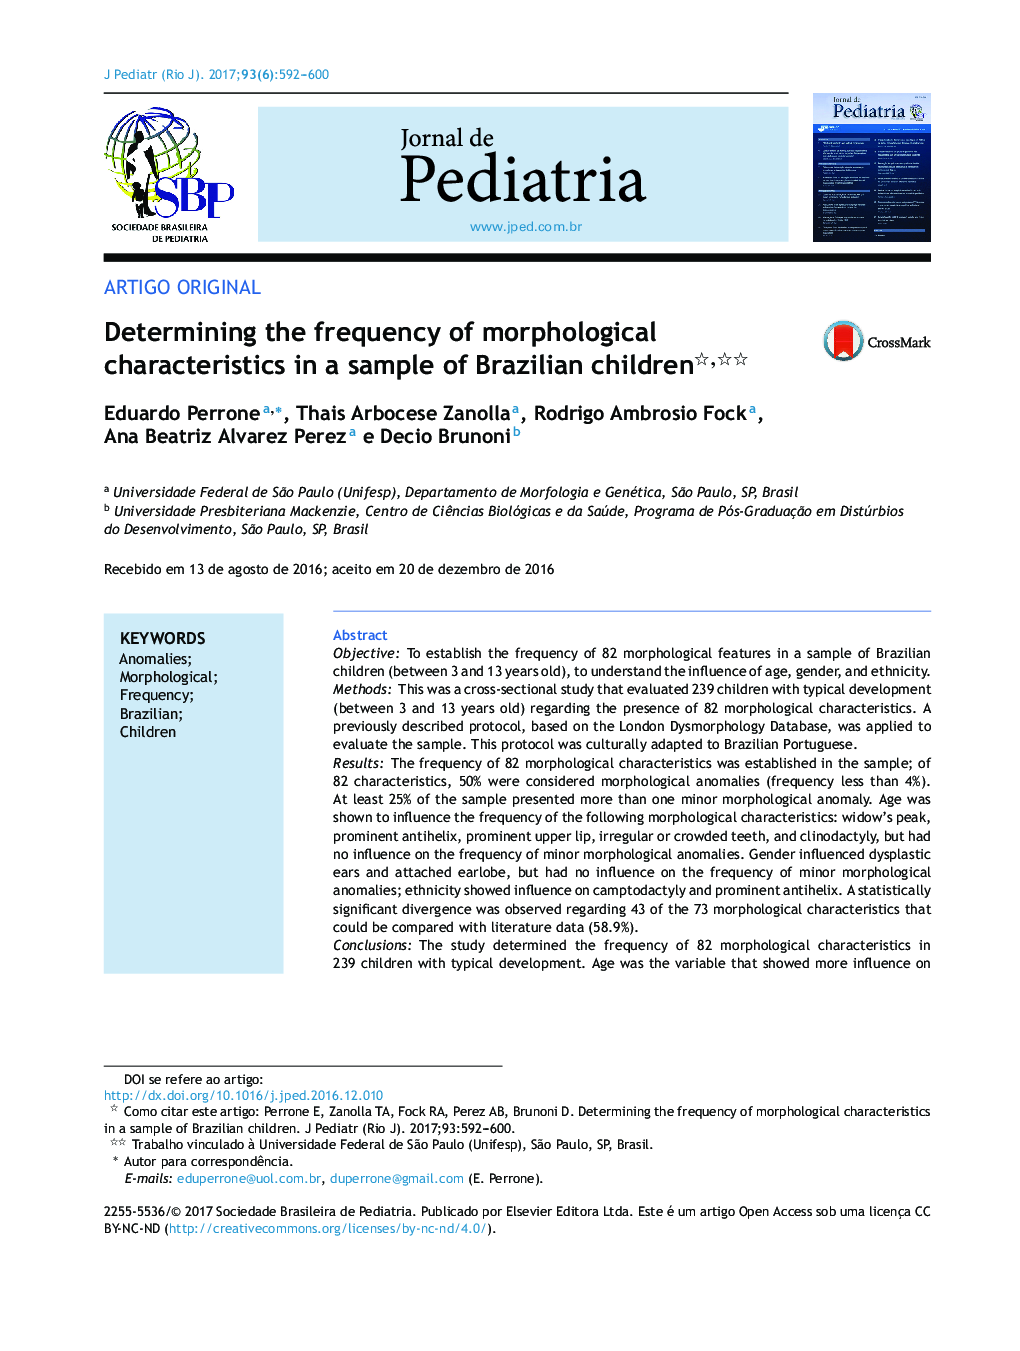 تعیین فراوانی ویژگی های مورفولوژیکی در نمونه ای از کودکان برزیلی 